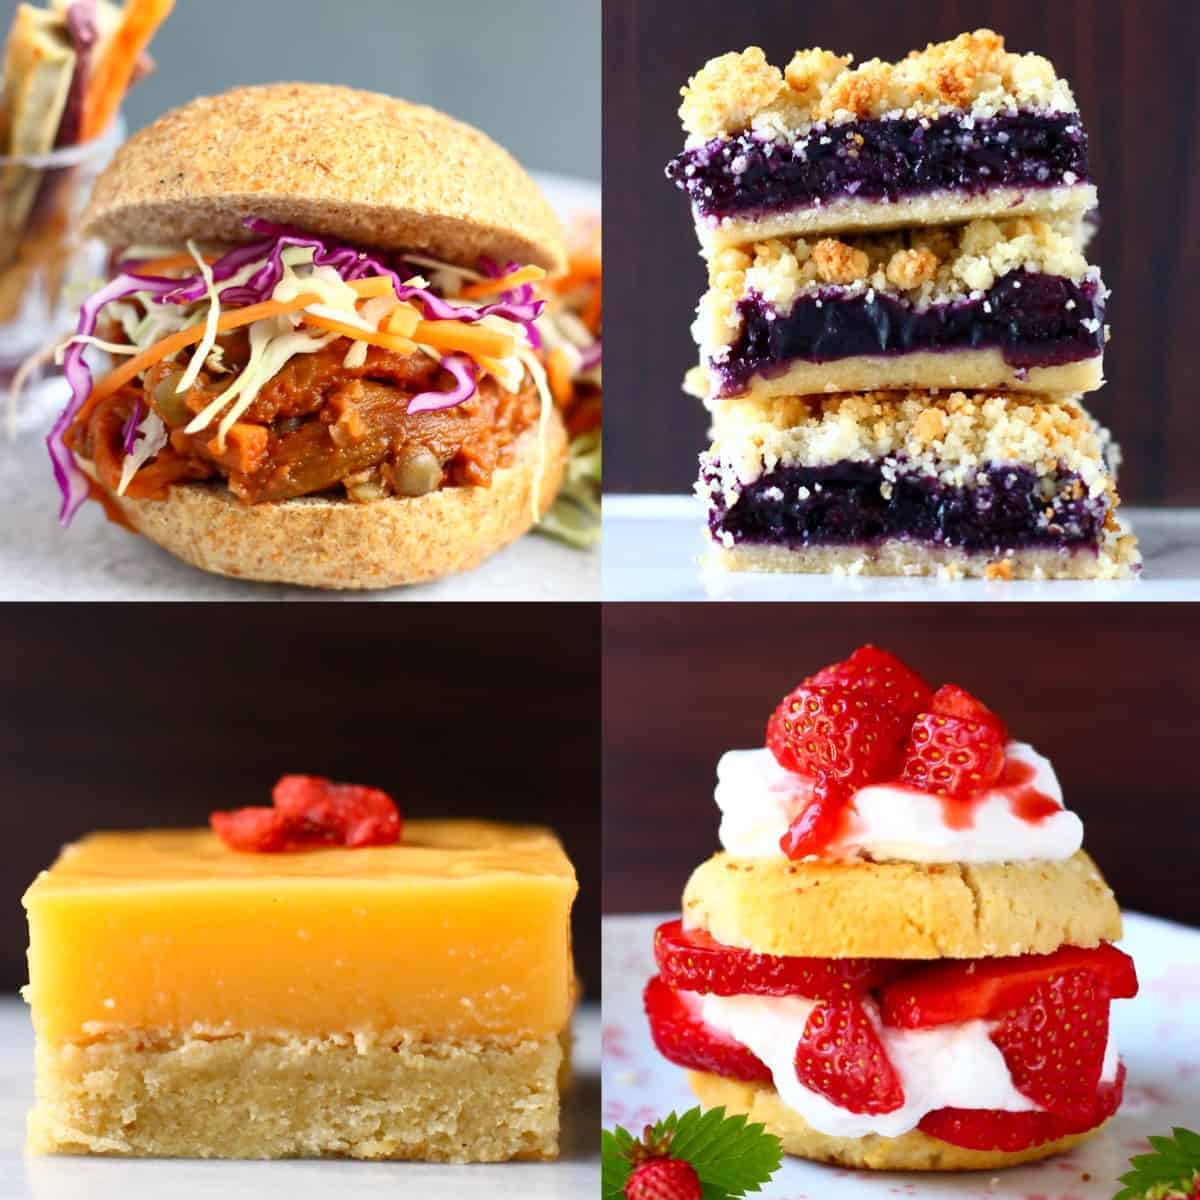 Un collage de cuatro recetas veganas del 4 de julio